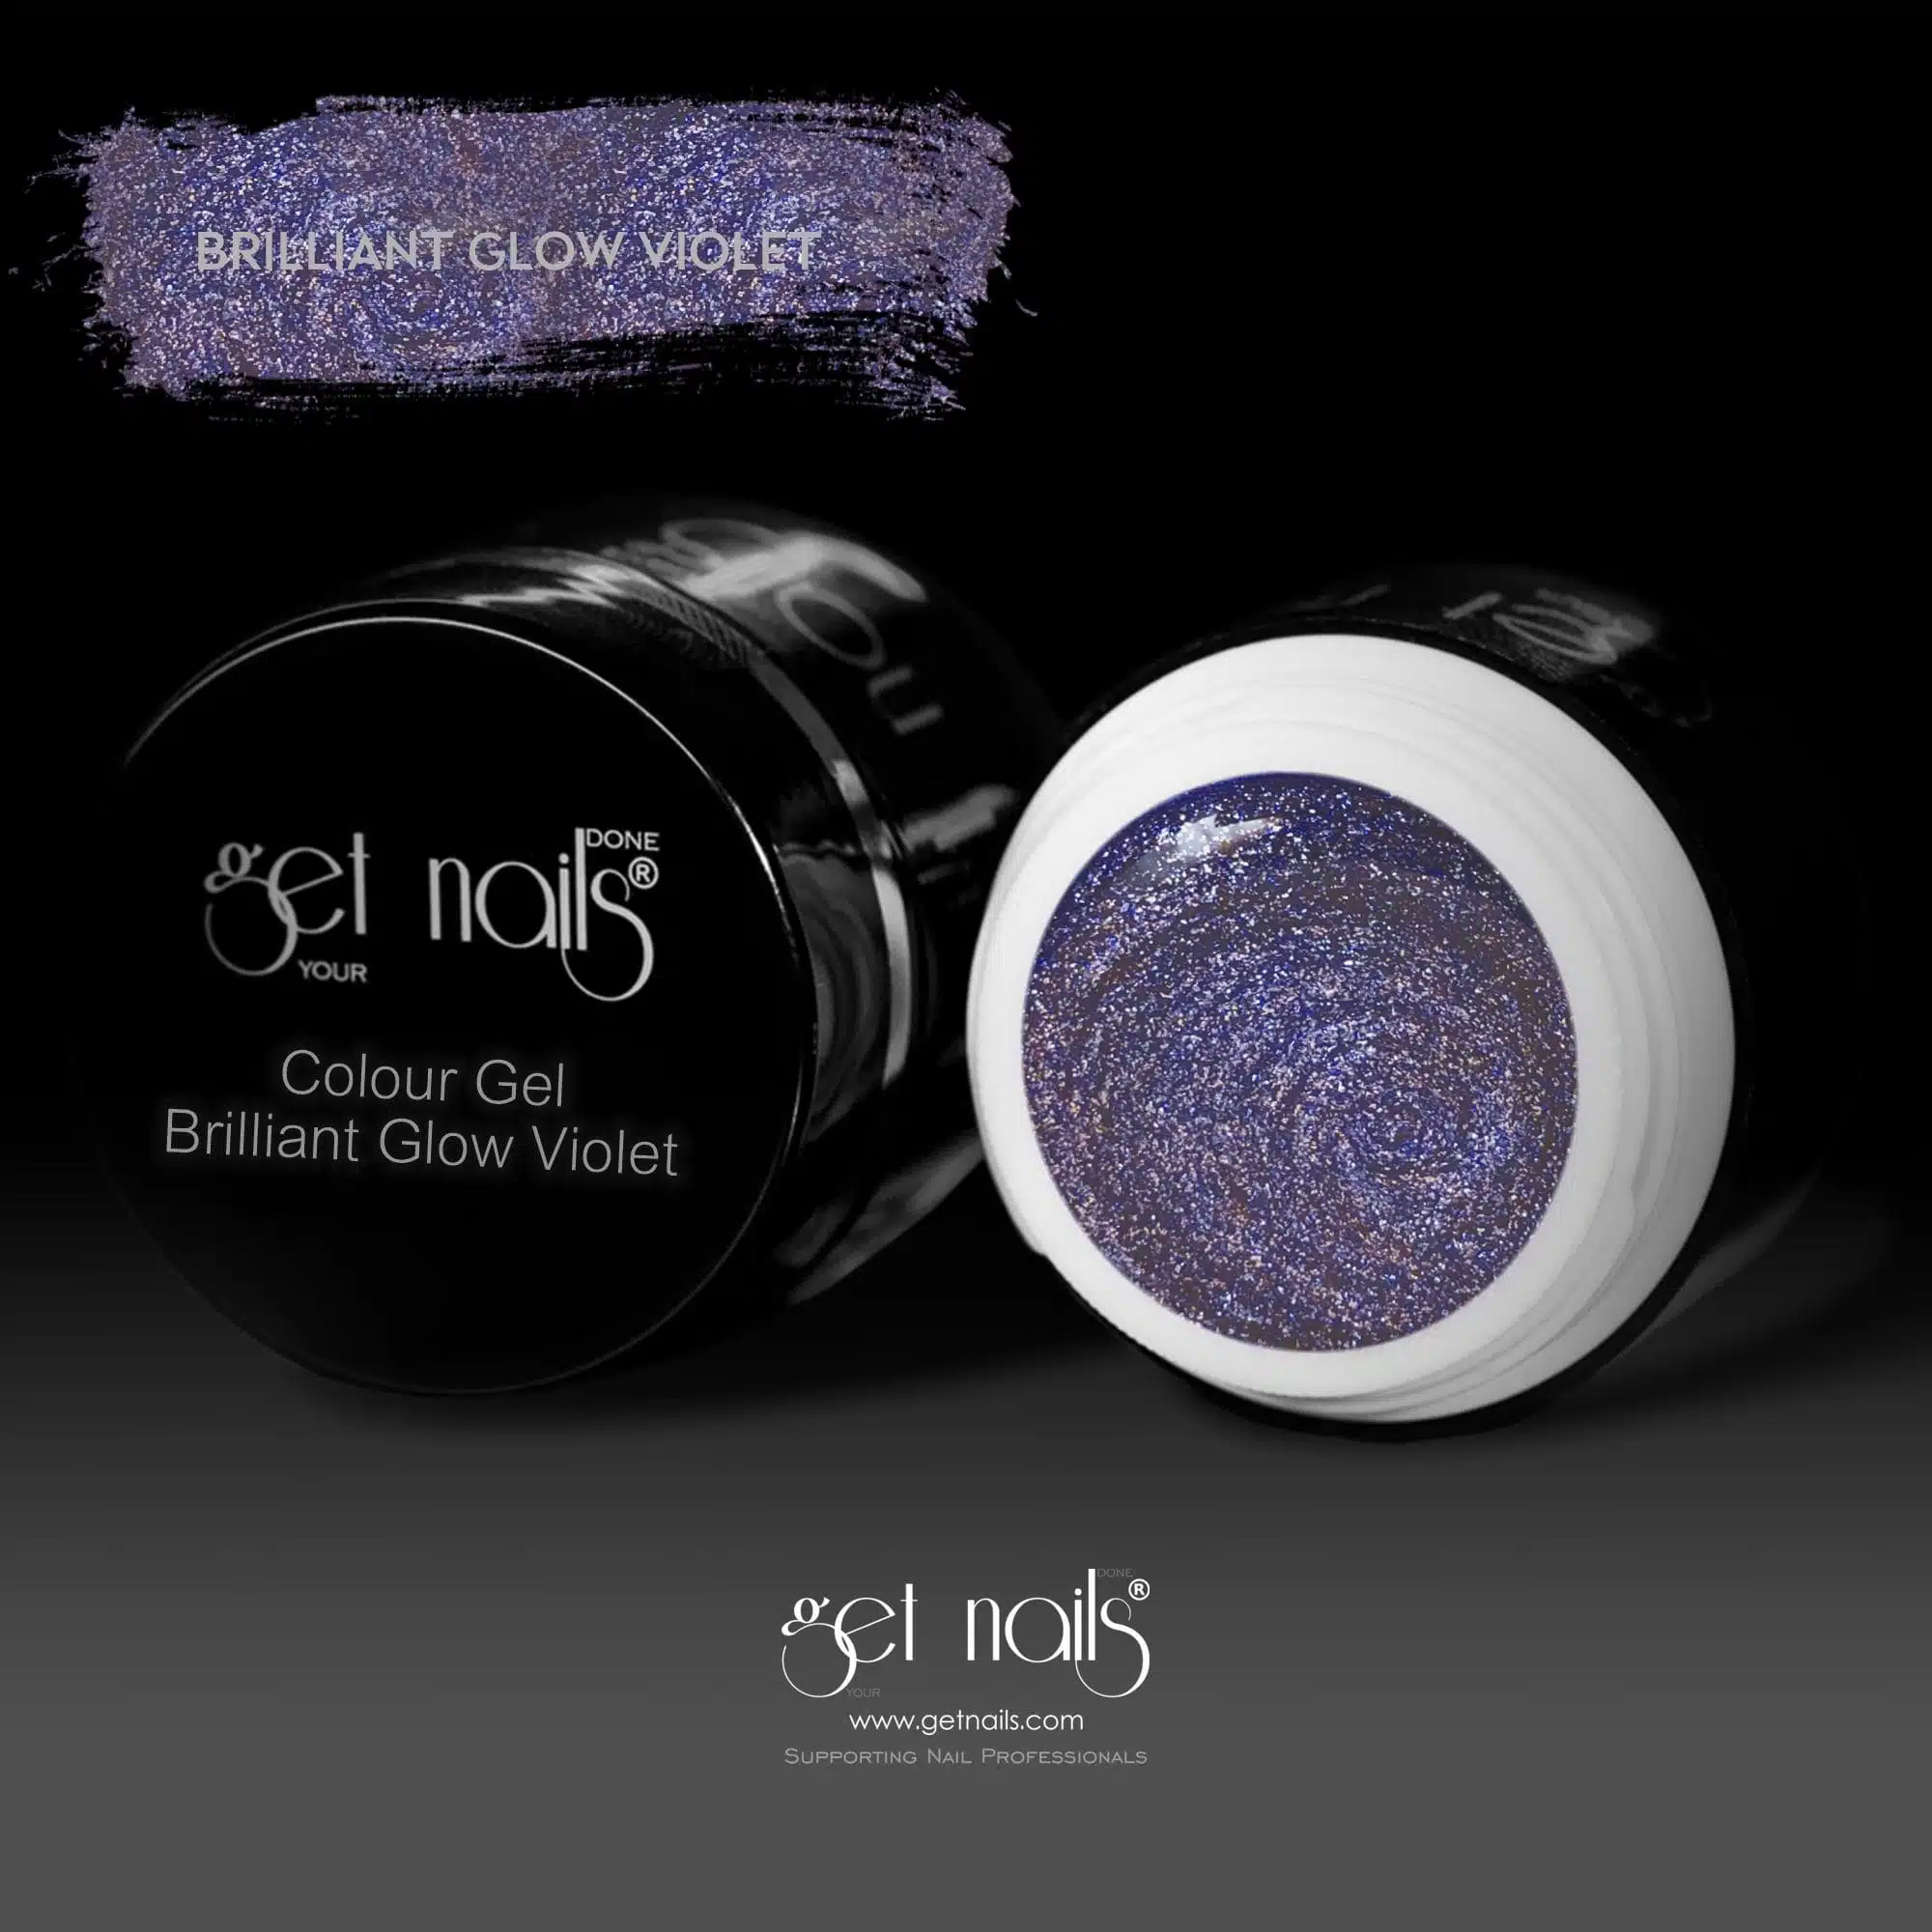 Get Nails Austria - Színes gél Brilliant Glow Violet 5g